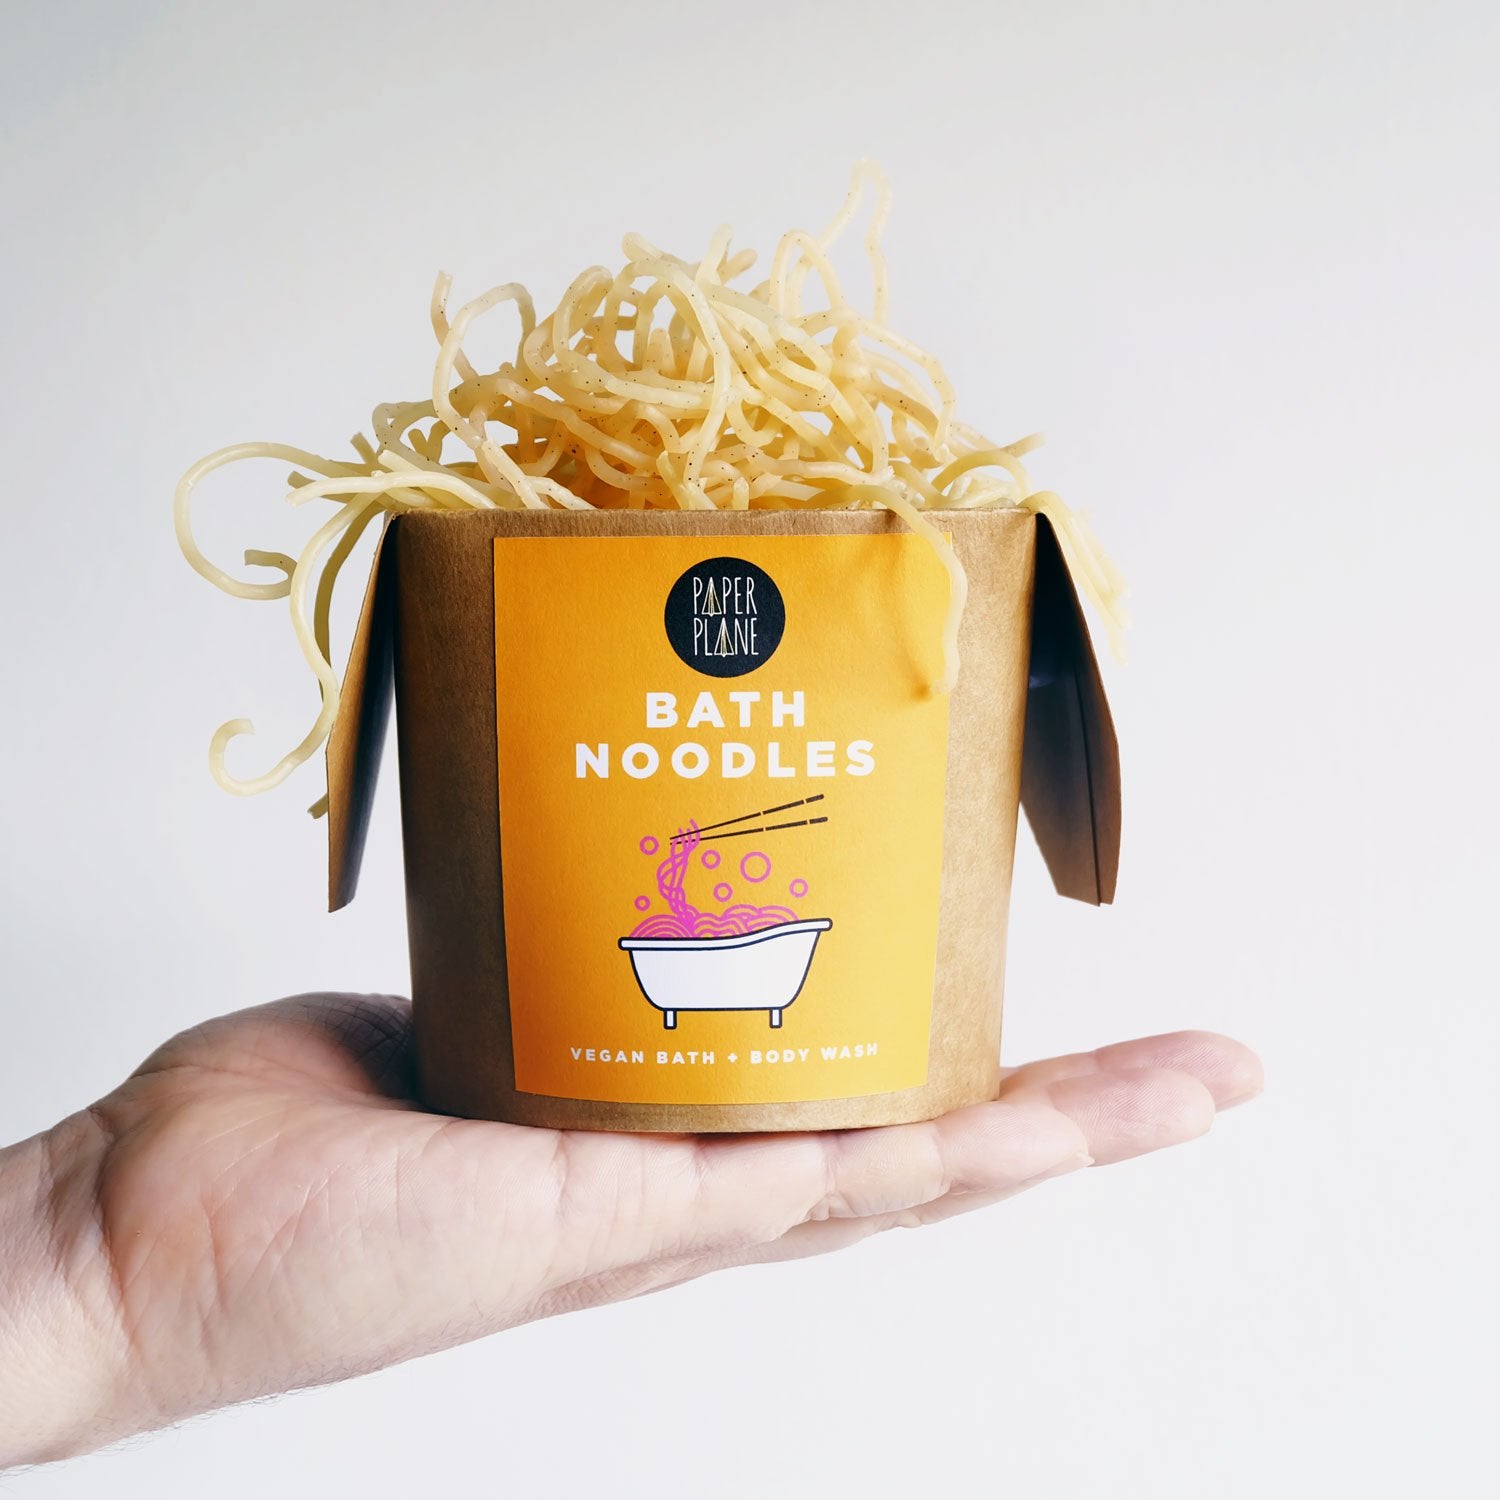 Bath Noodles, Singapore Spice